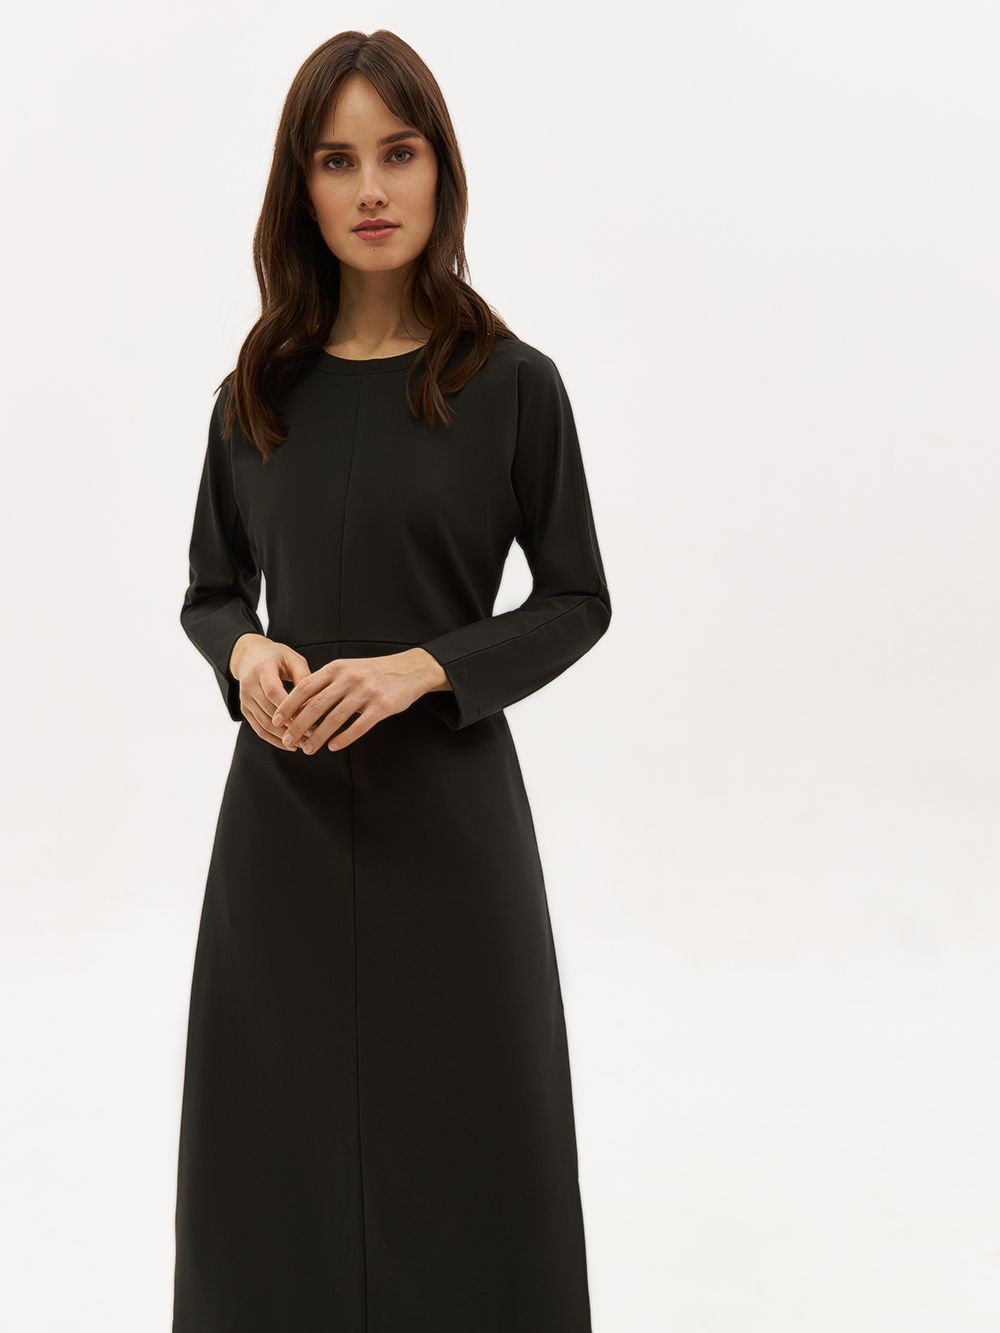 Трикотажное платье PAVO со светоотражающим брендингом. Изображение 2